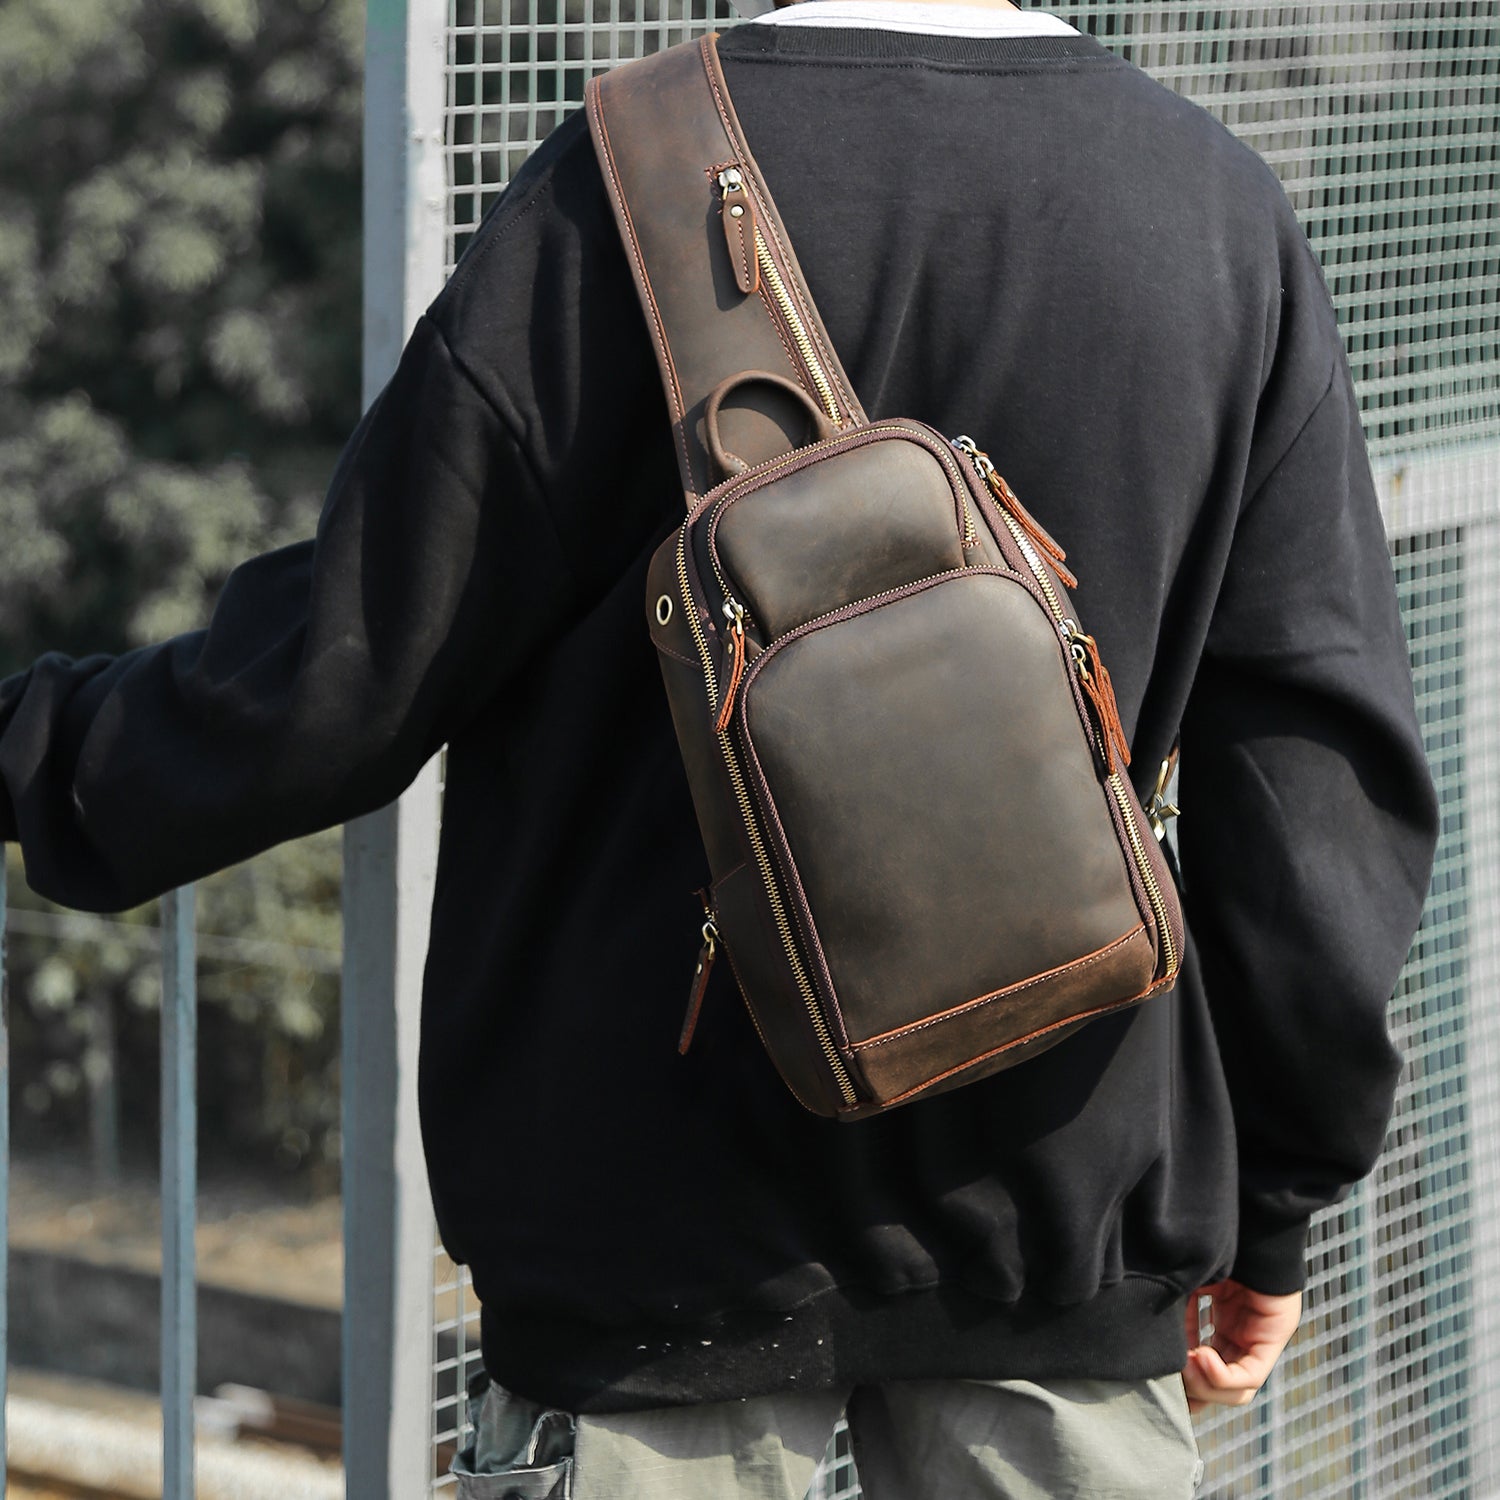 Tan Leather Sling Backpack Shoulder Bag Men. Single Strap 